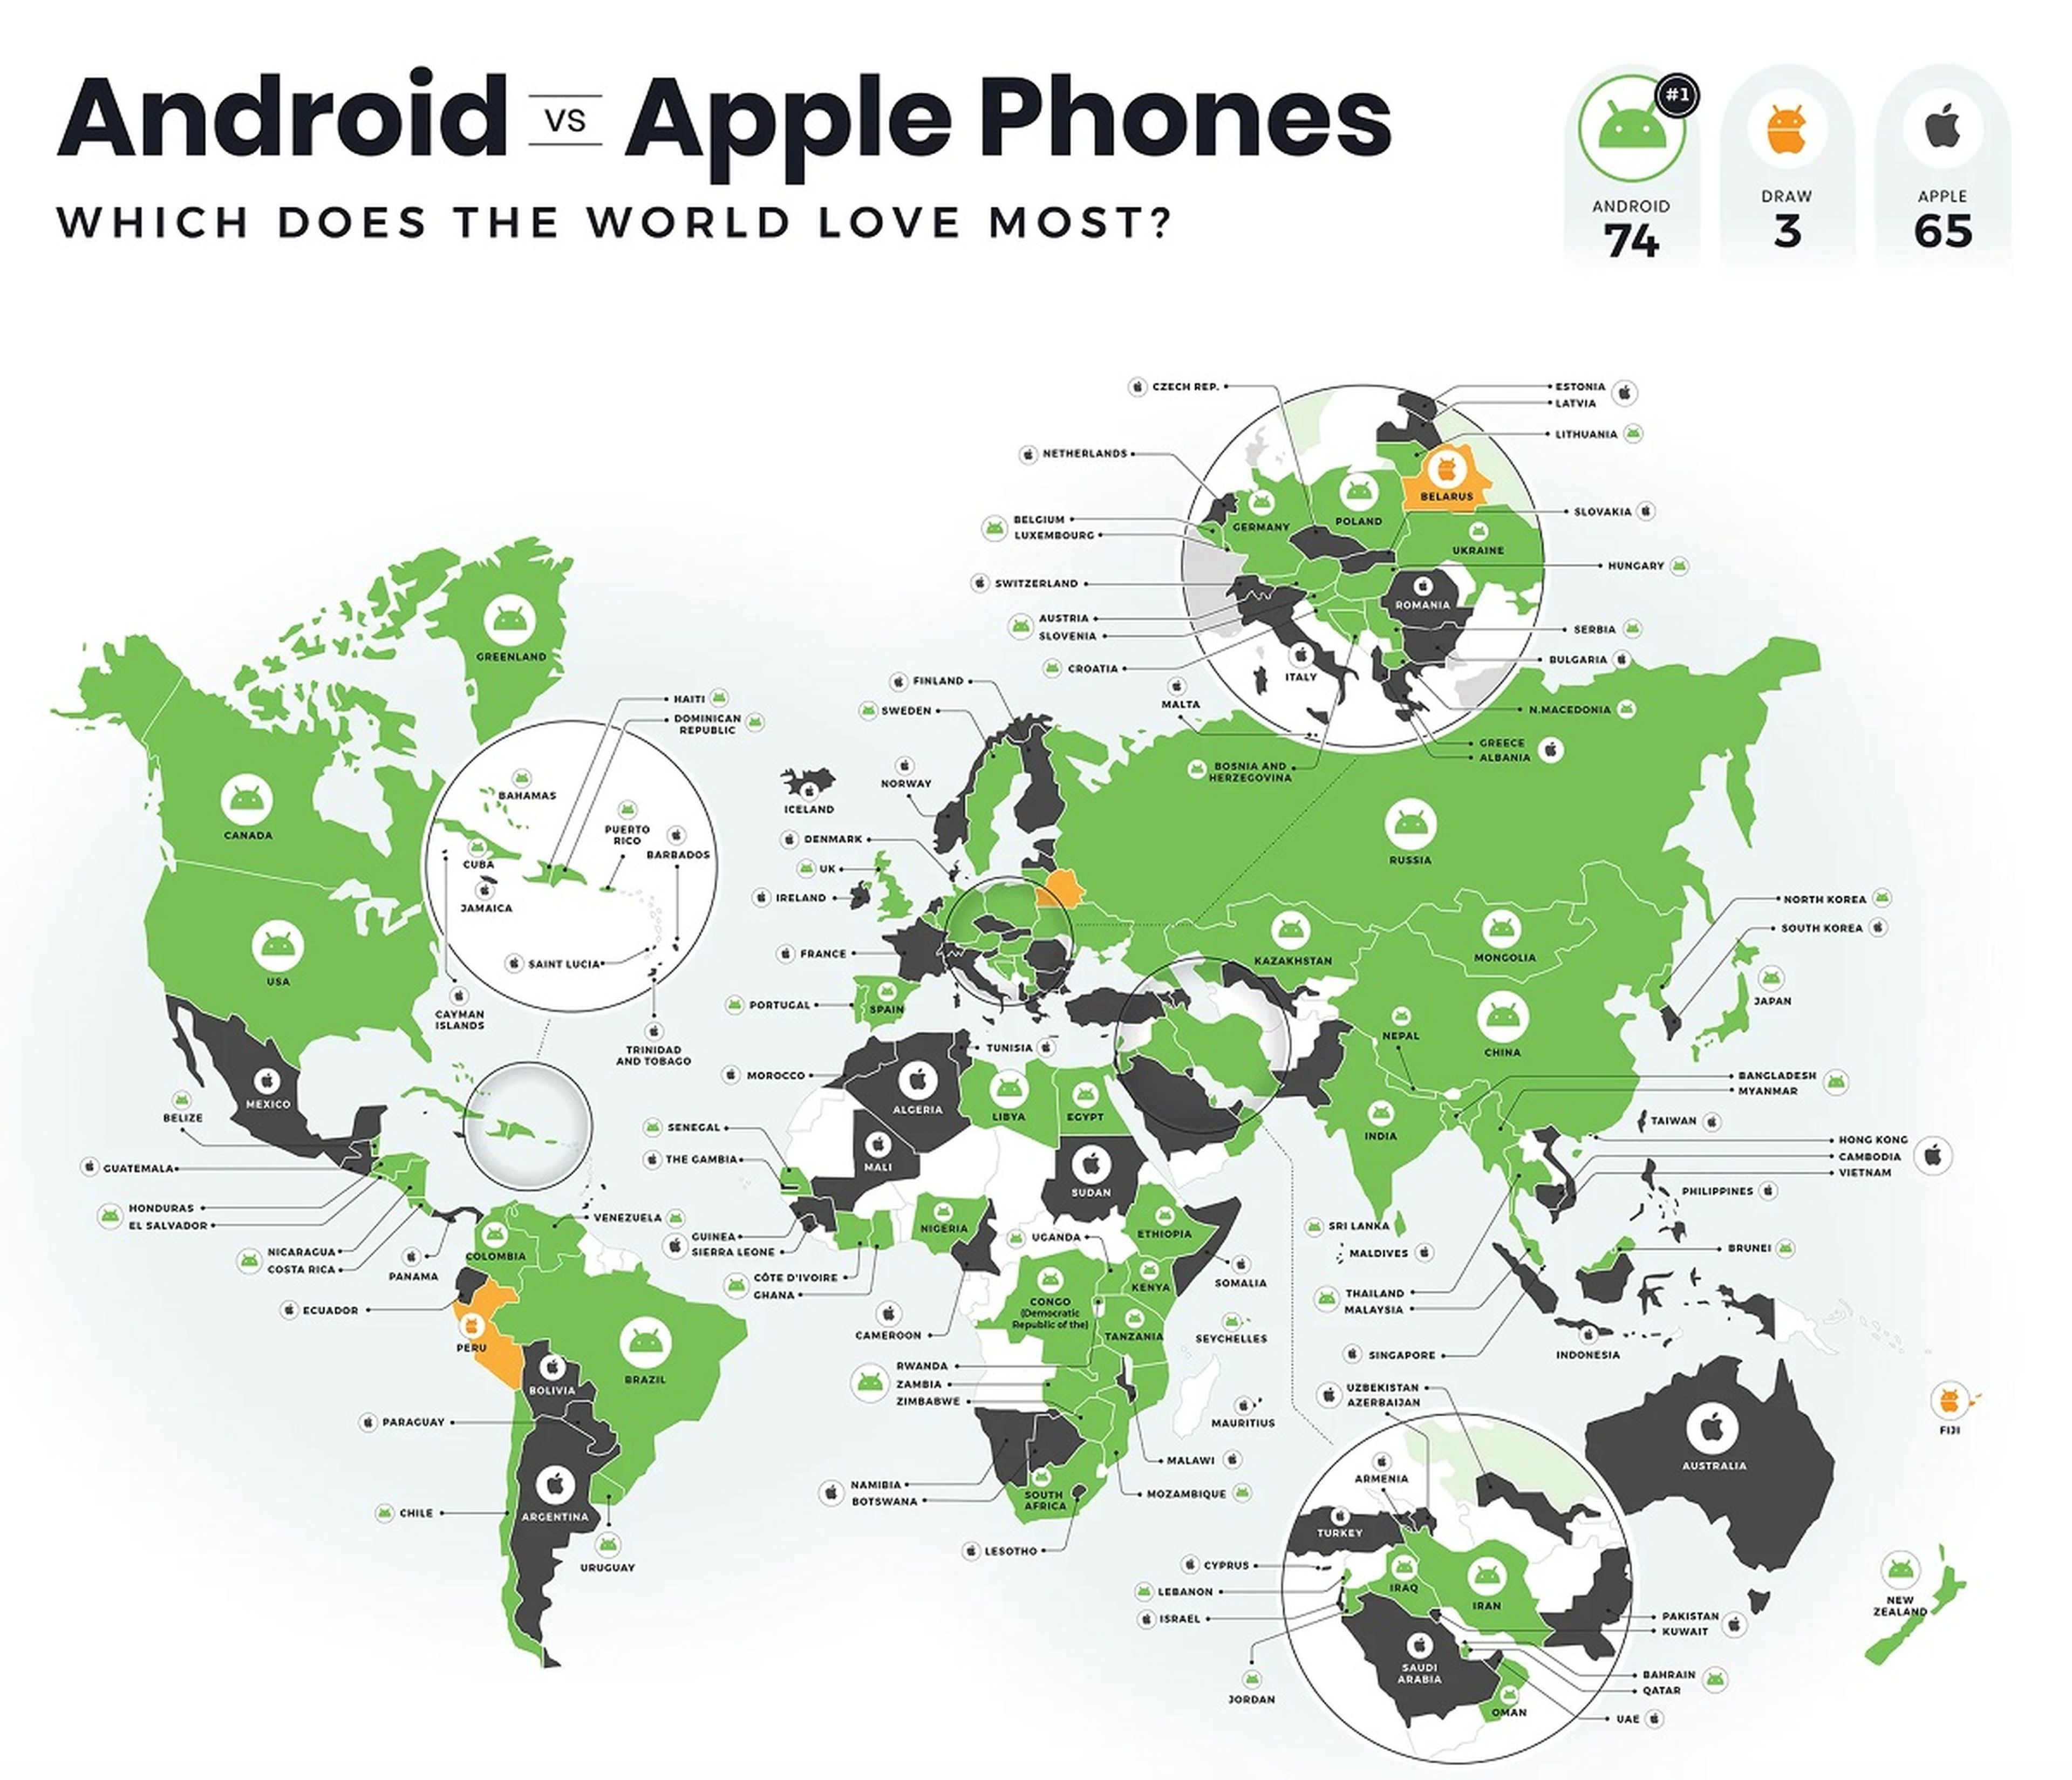 Hay más países que prefieren Android que los que prefieren Apple, pero la diferencia no es muy grande. En España reina Android.